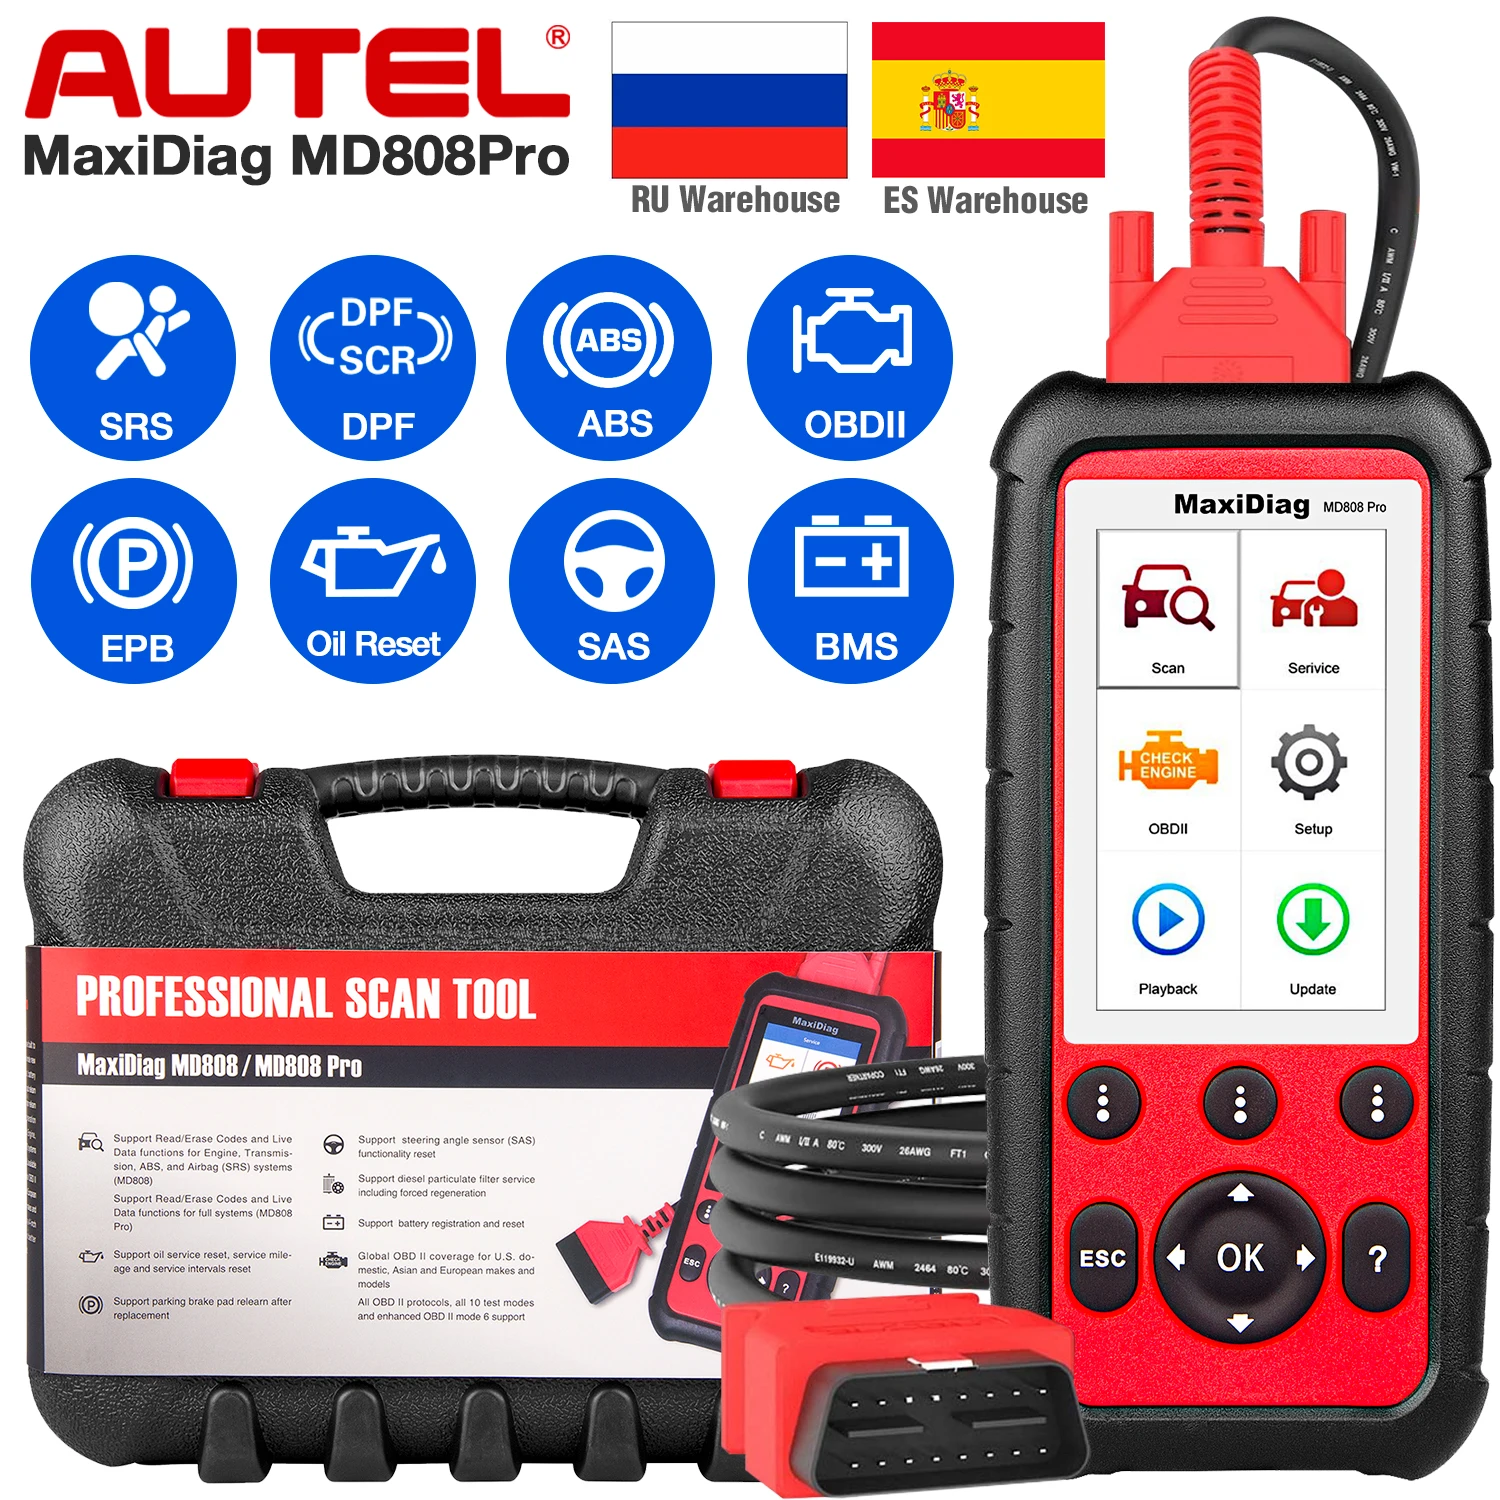 

Autel MaxiDiag MD808 Pro все системы OBDII масло сканера сброс регистрации, парковочная тормозная колодка relearning, SAS,SRS,ABS,EPB,DPF,BMS